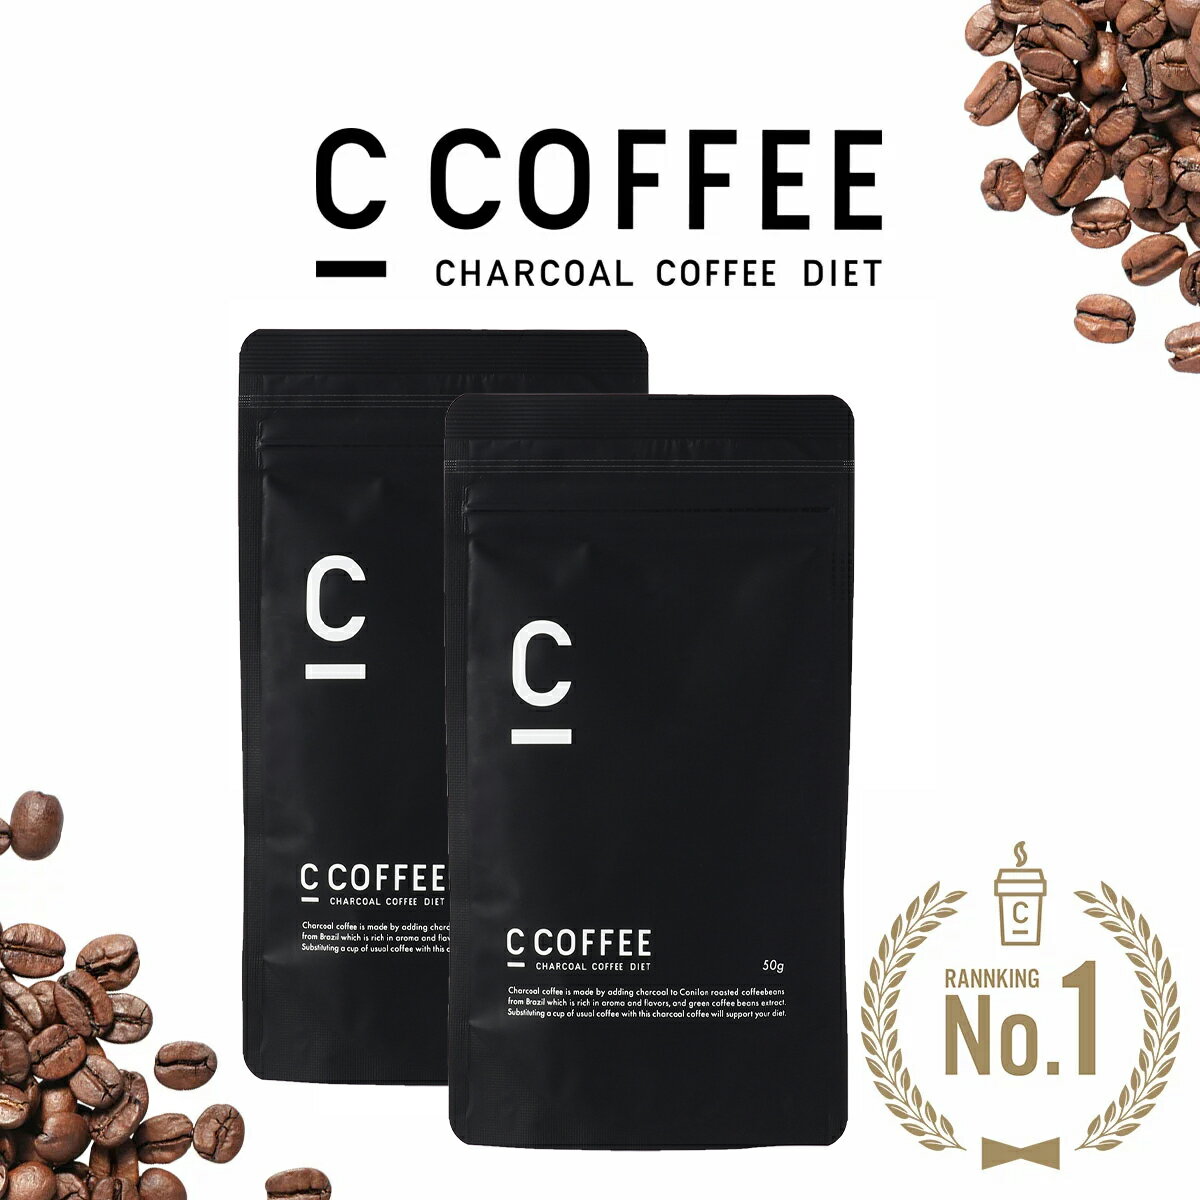 C COFFEE （ シーコーヒー ） ハーフサイズ 2袋セット（1袋あたり50g） ダイエットコーヒー チャコールクレンズ MCTオイル ダイエット コーヒー チャコールコーヒーダイエット 人気 珈琲 ccoffee ダイエット 炭コーヒー